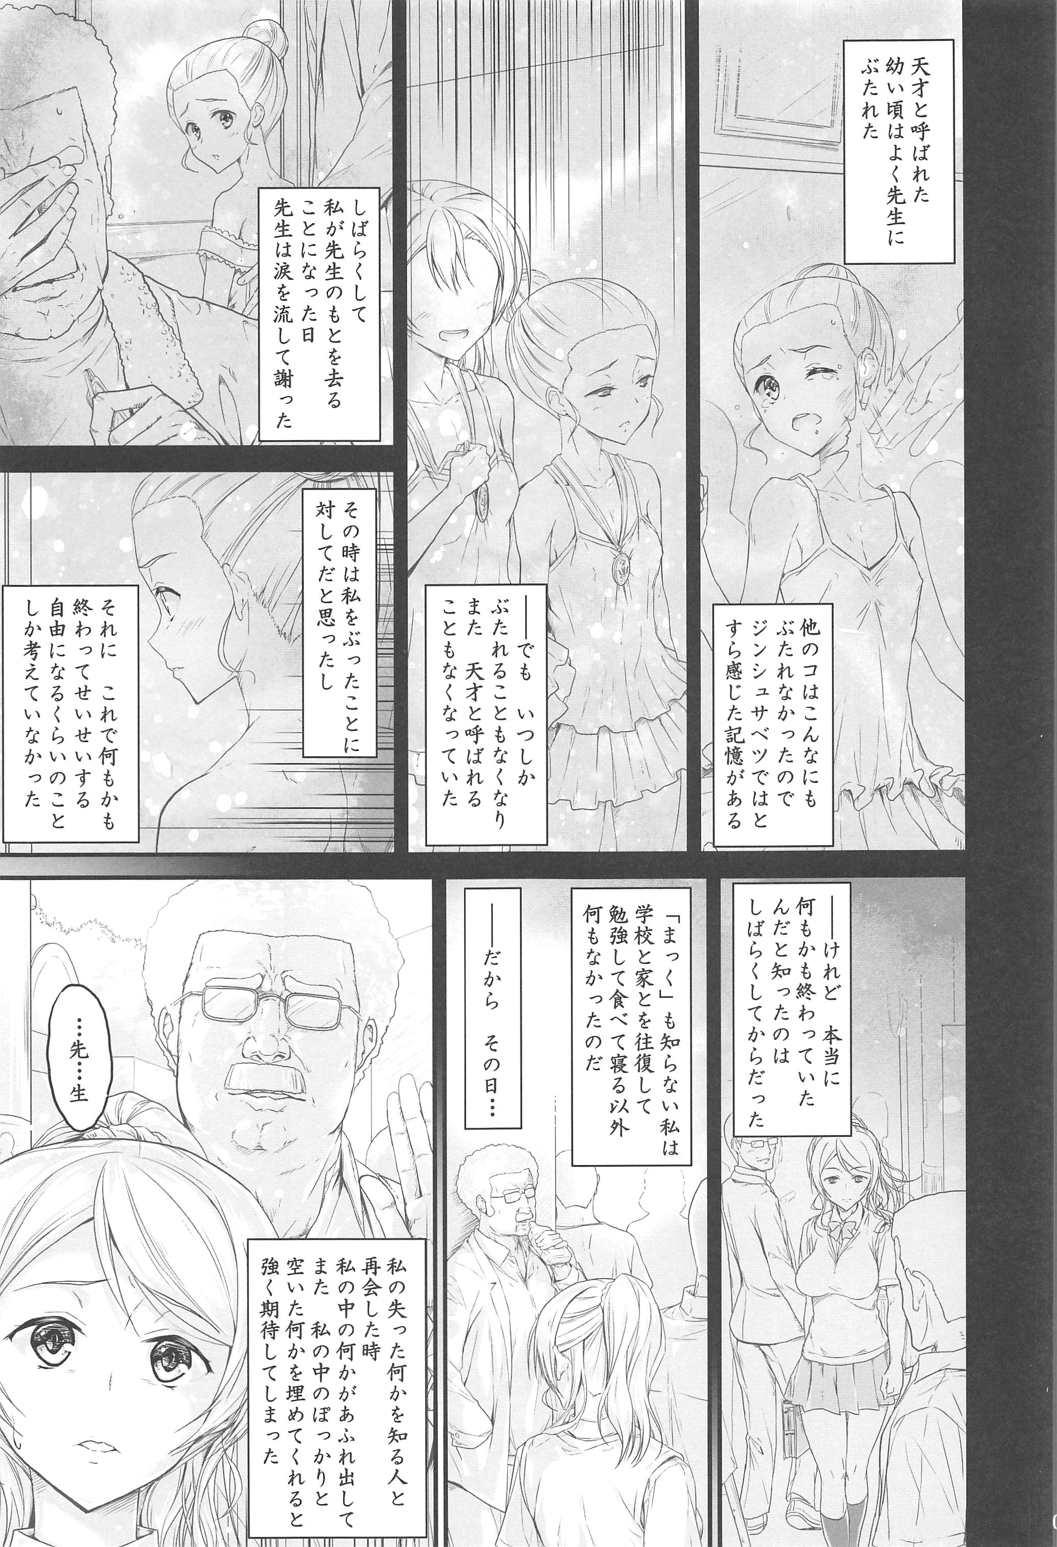 Room Kouhensachi no Yuutousei de Jiki Seito Kaichou Saiyuuryoku Kouho no Ninen Erichika - Love live White Chick - Page 3